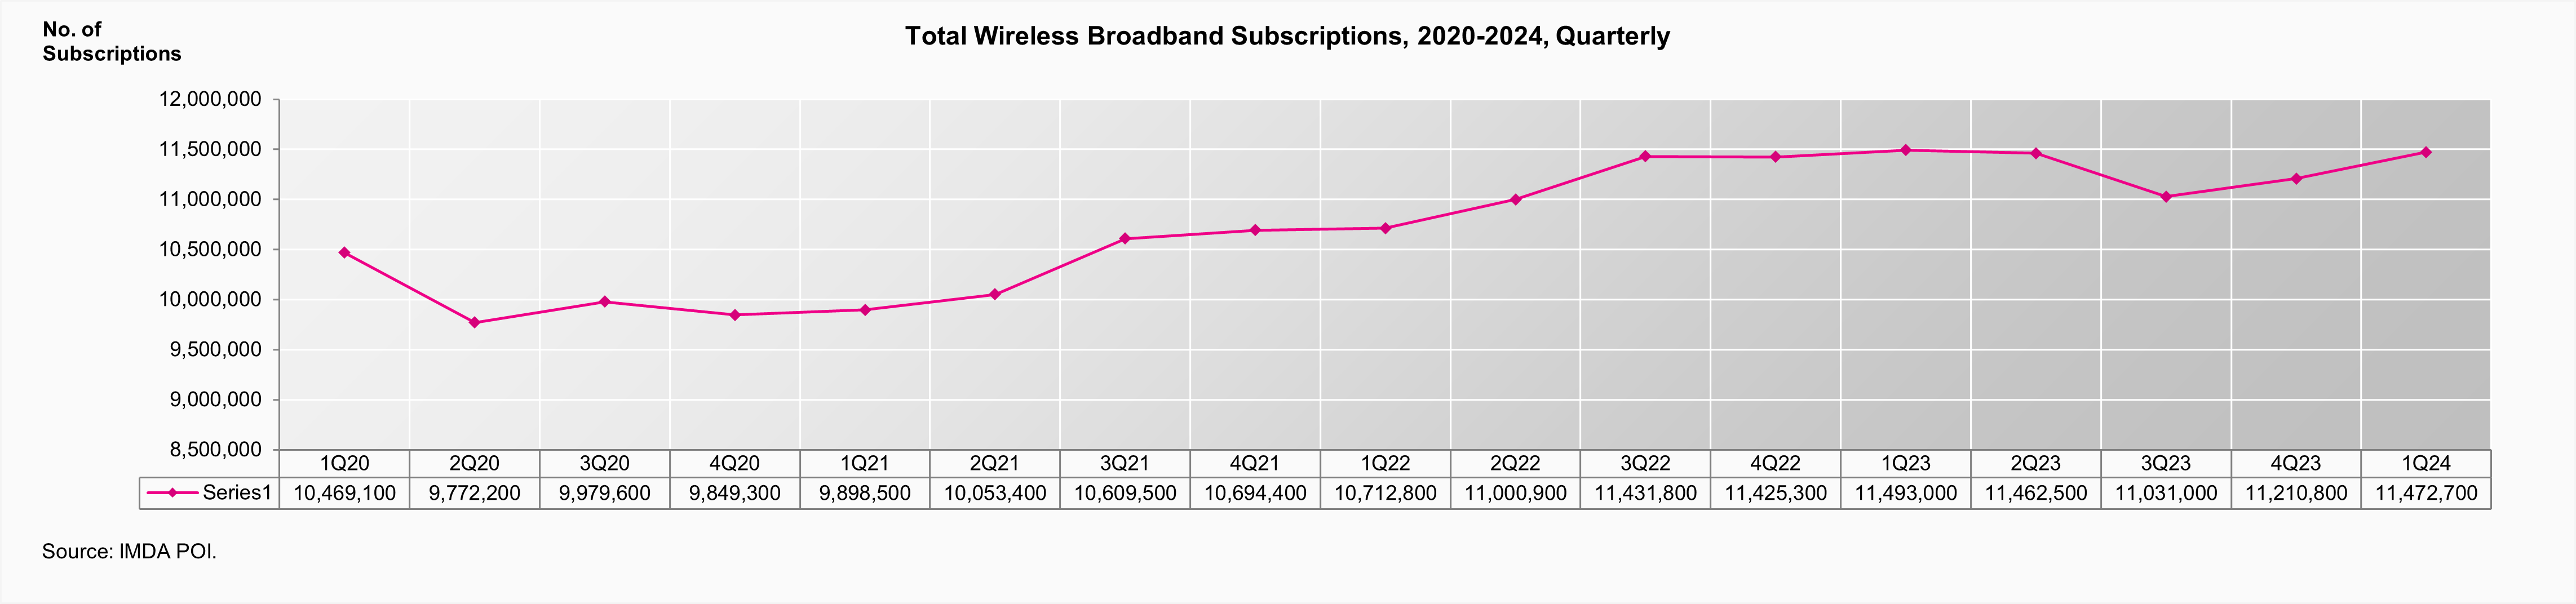 Total Wireless Broadband Subscriptions 1Q24